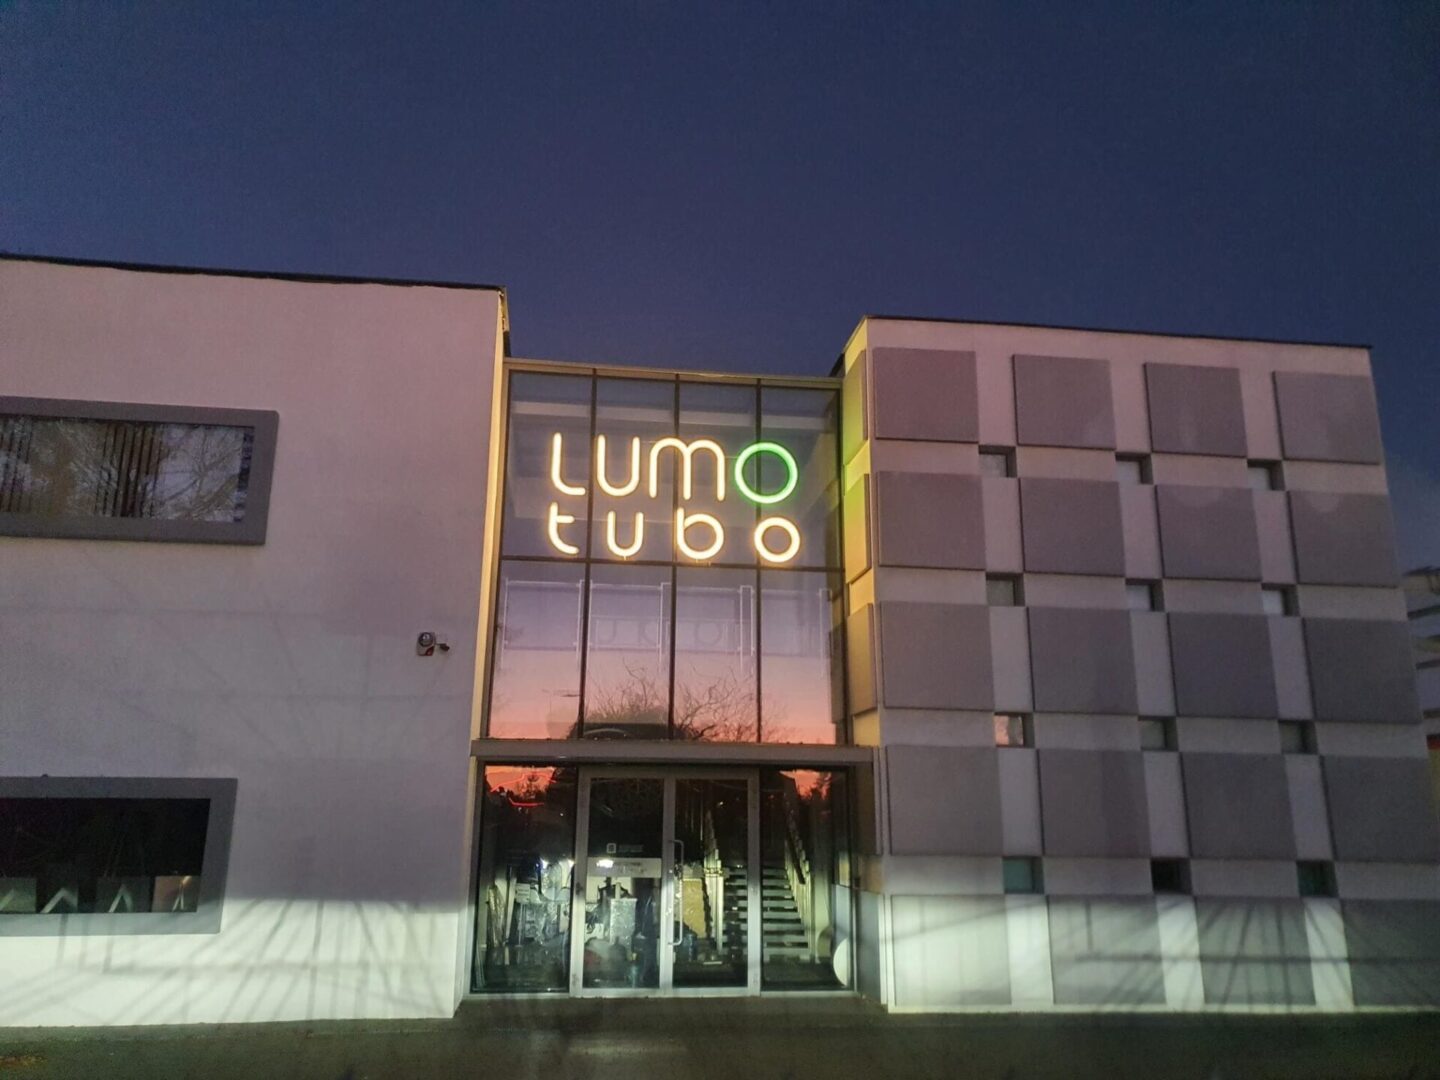 Instalacja liter świetlnych w stylu neon- logo Lumotubo na fasadzie budynku siedziby głównej.